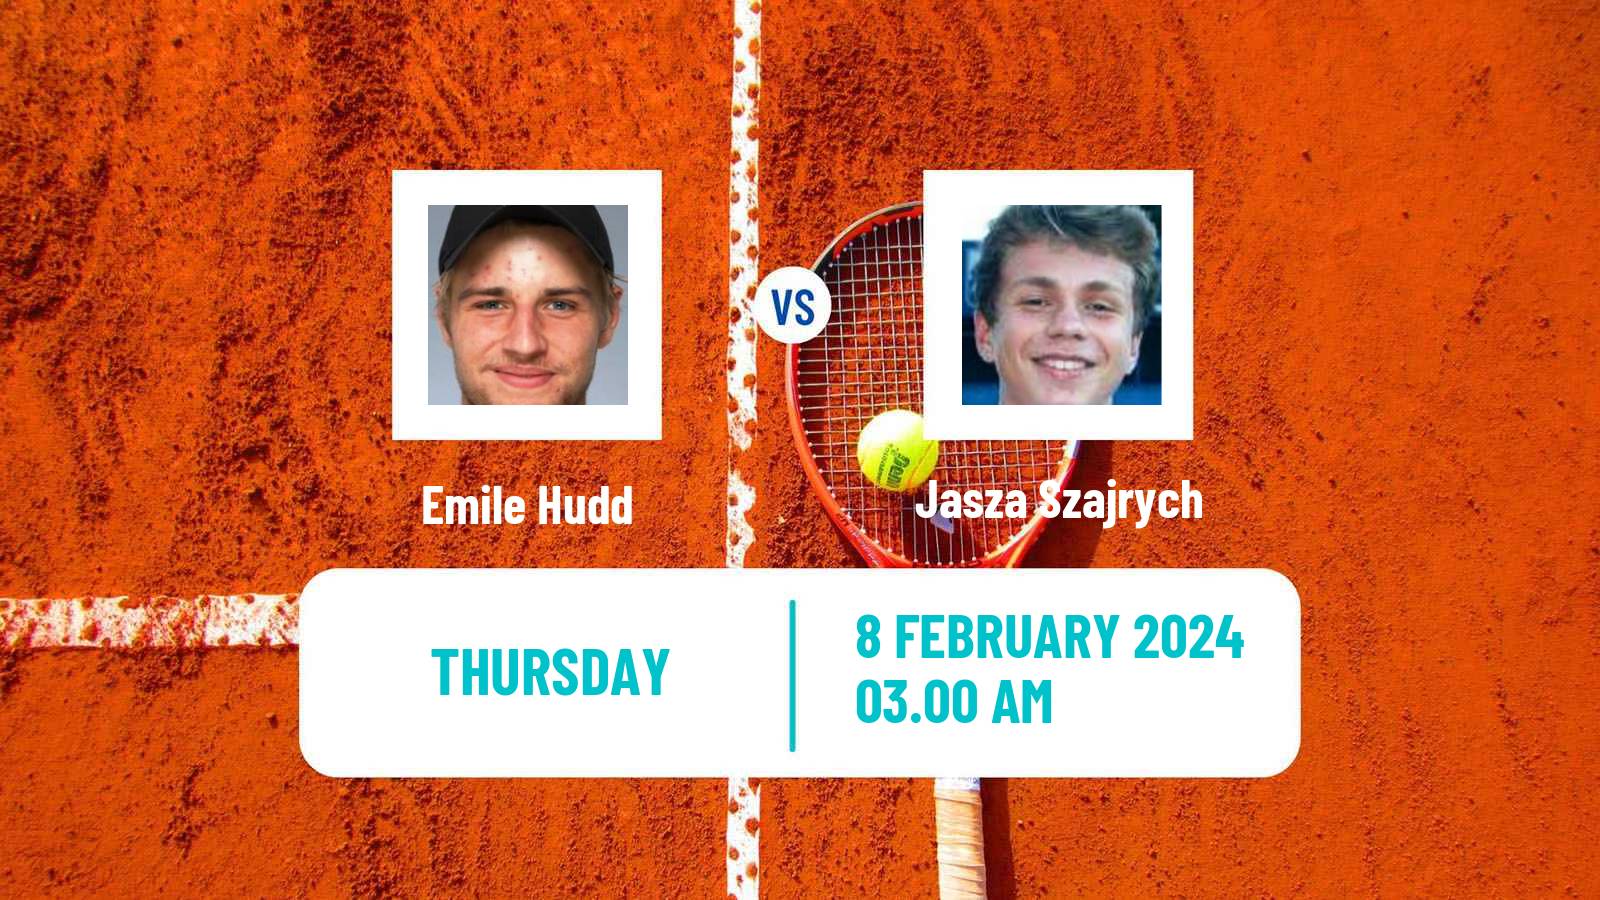 Tennis ITF M15 Sharm Elsheikh 2 Men Emile Hudd - Jasza Szajrych